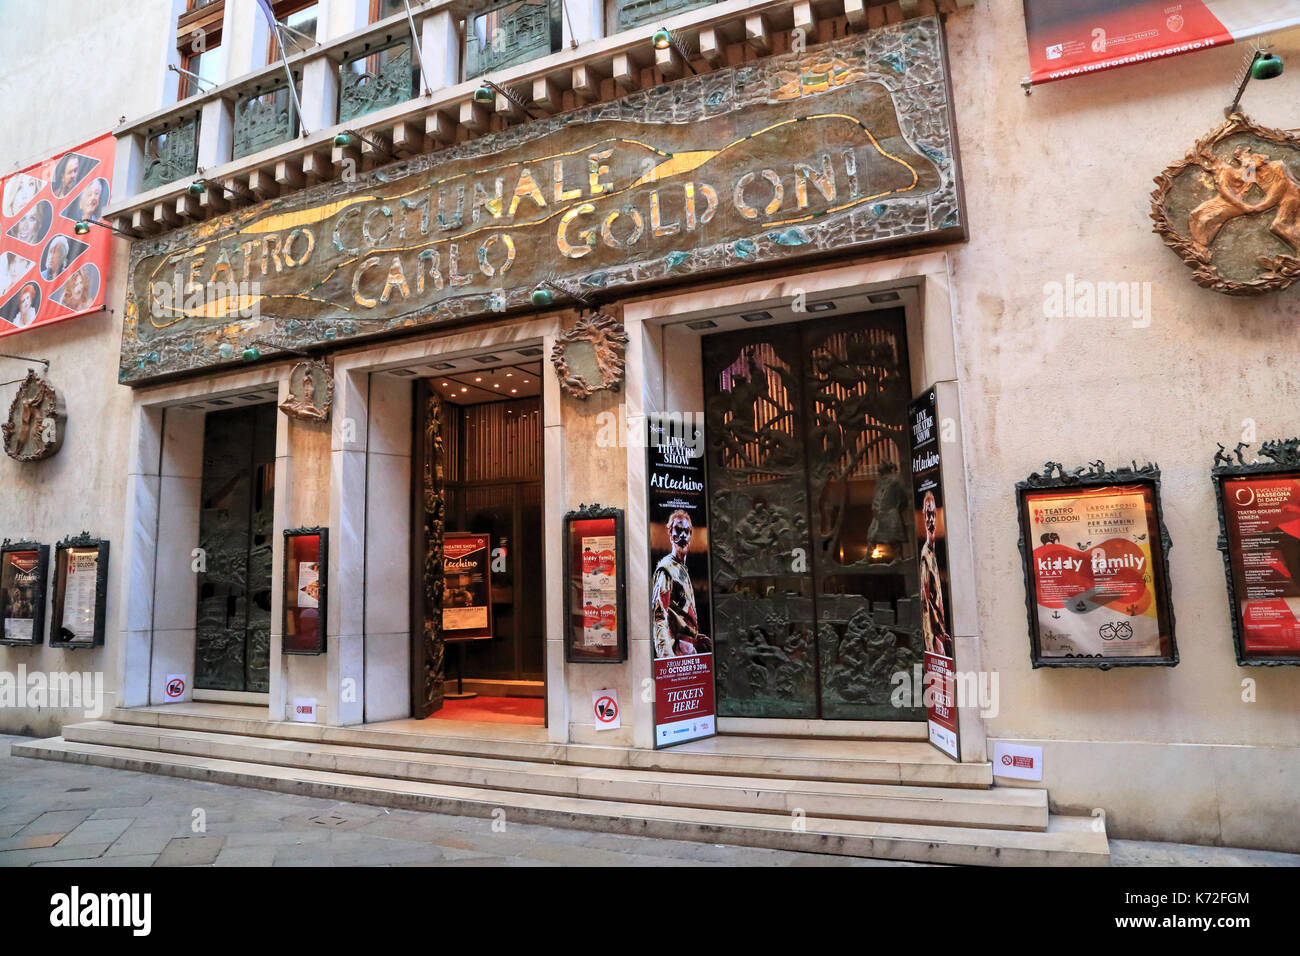 Théâtre Goldoni / Teatro Carlo Goldoni Banque D'Images